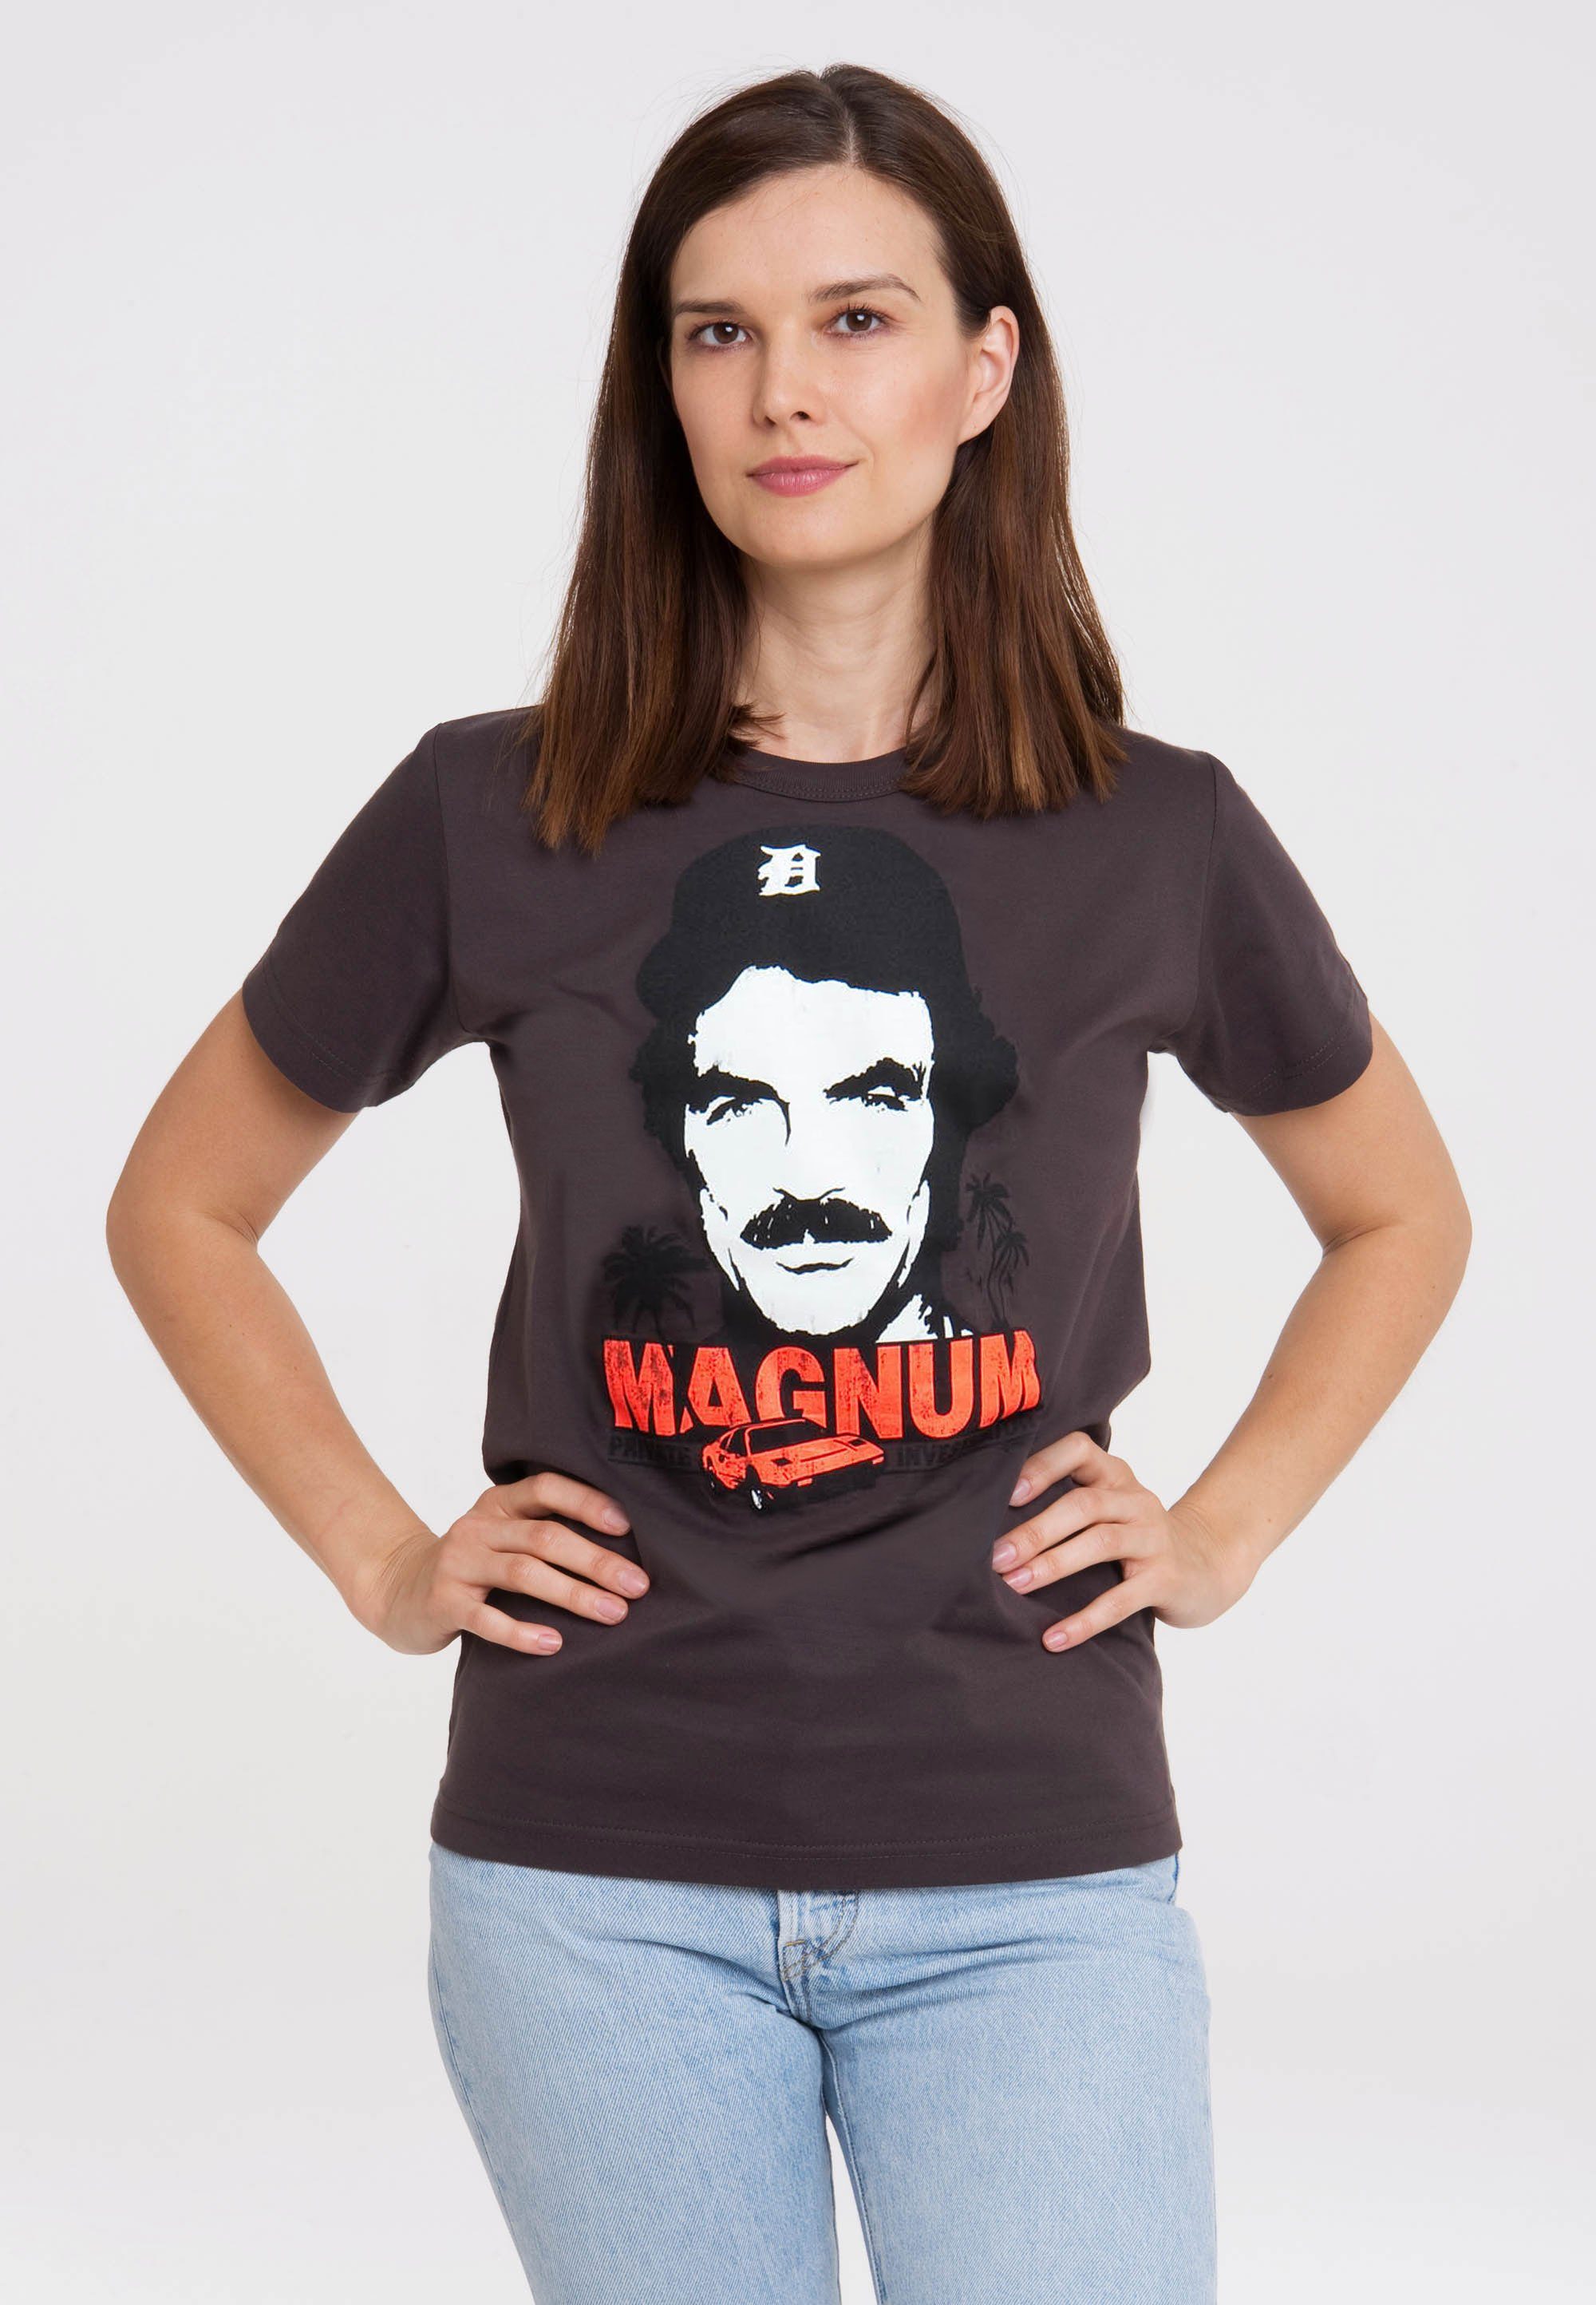 Magnum besonders T-Shirt bequem klassischem Print, Mit LOGOSHIRT coolem mit Rundhalsausschnitt